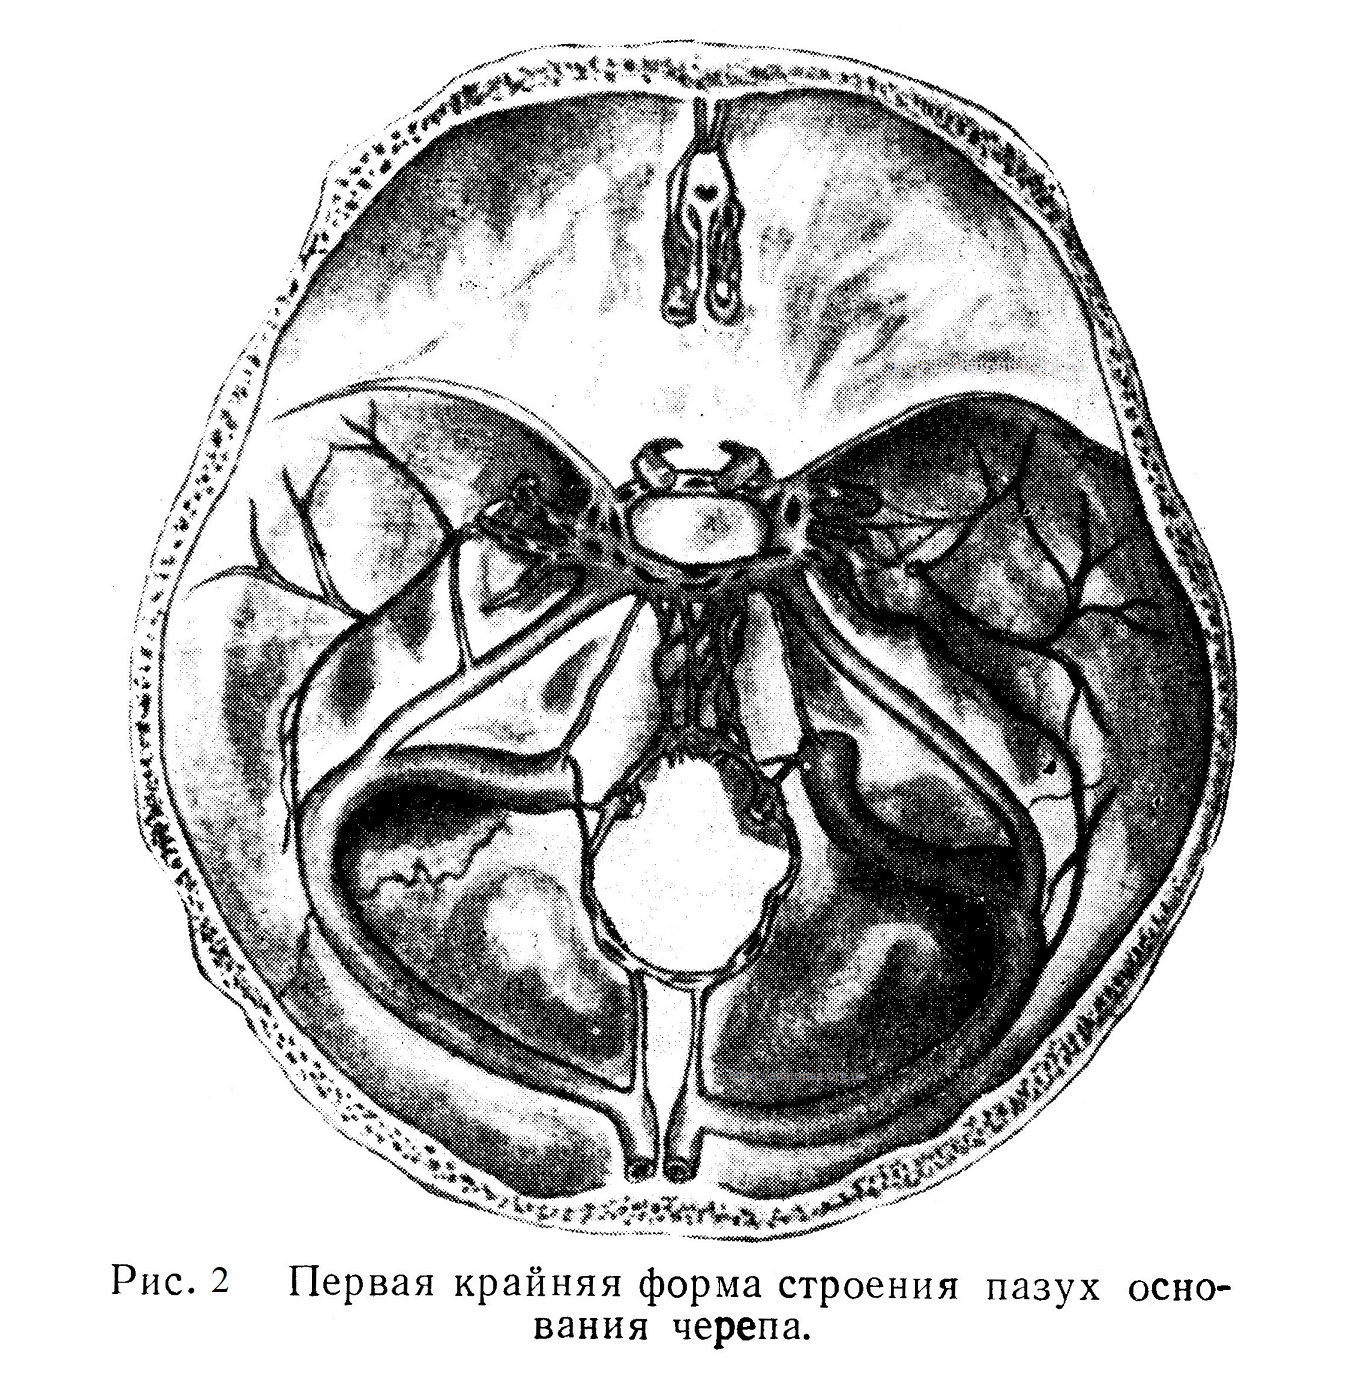 Первая крайняя форма строения пазух основания черепа.